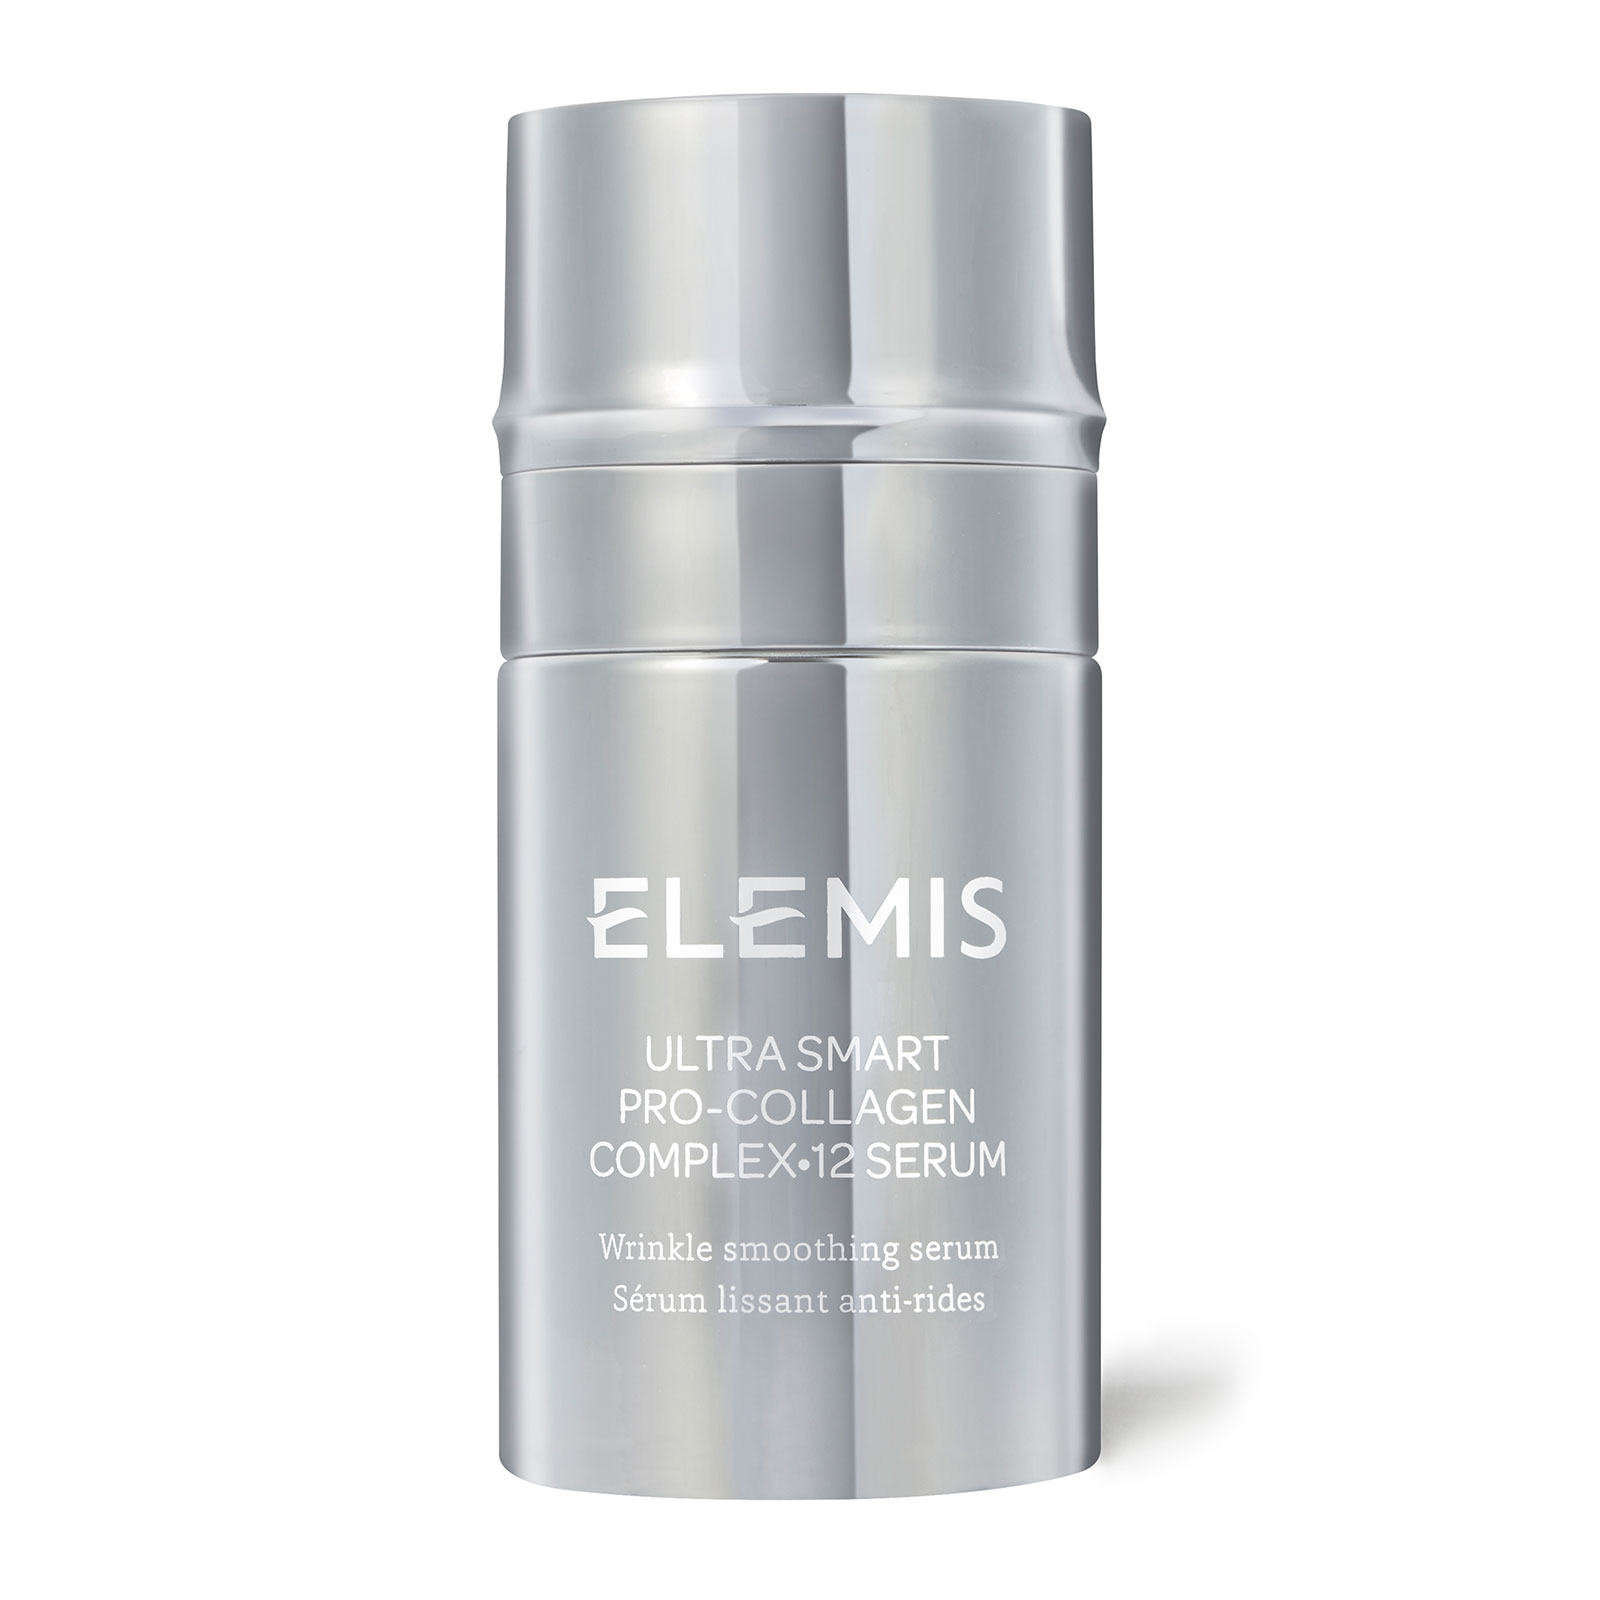 ELEMIS ULTRA SMART Pro-Collagen Complex�12 Serum 30ml